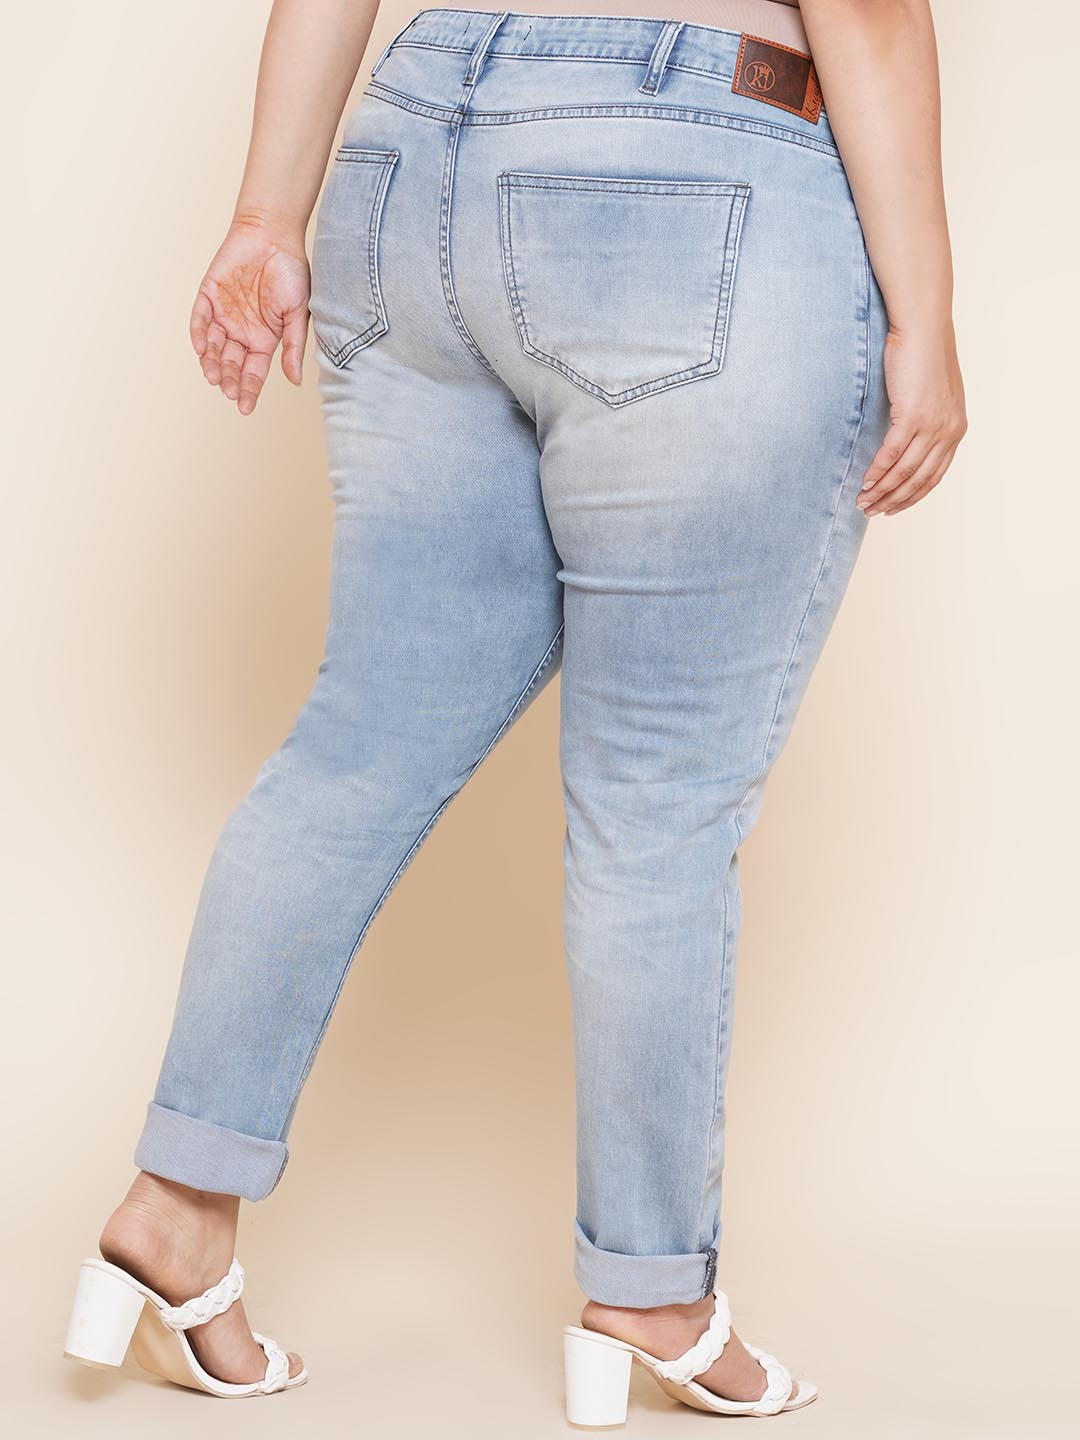 bottomwear_kiaahvi/jeans/KIJ6008/kij6008-5.jpg